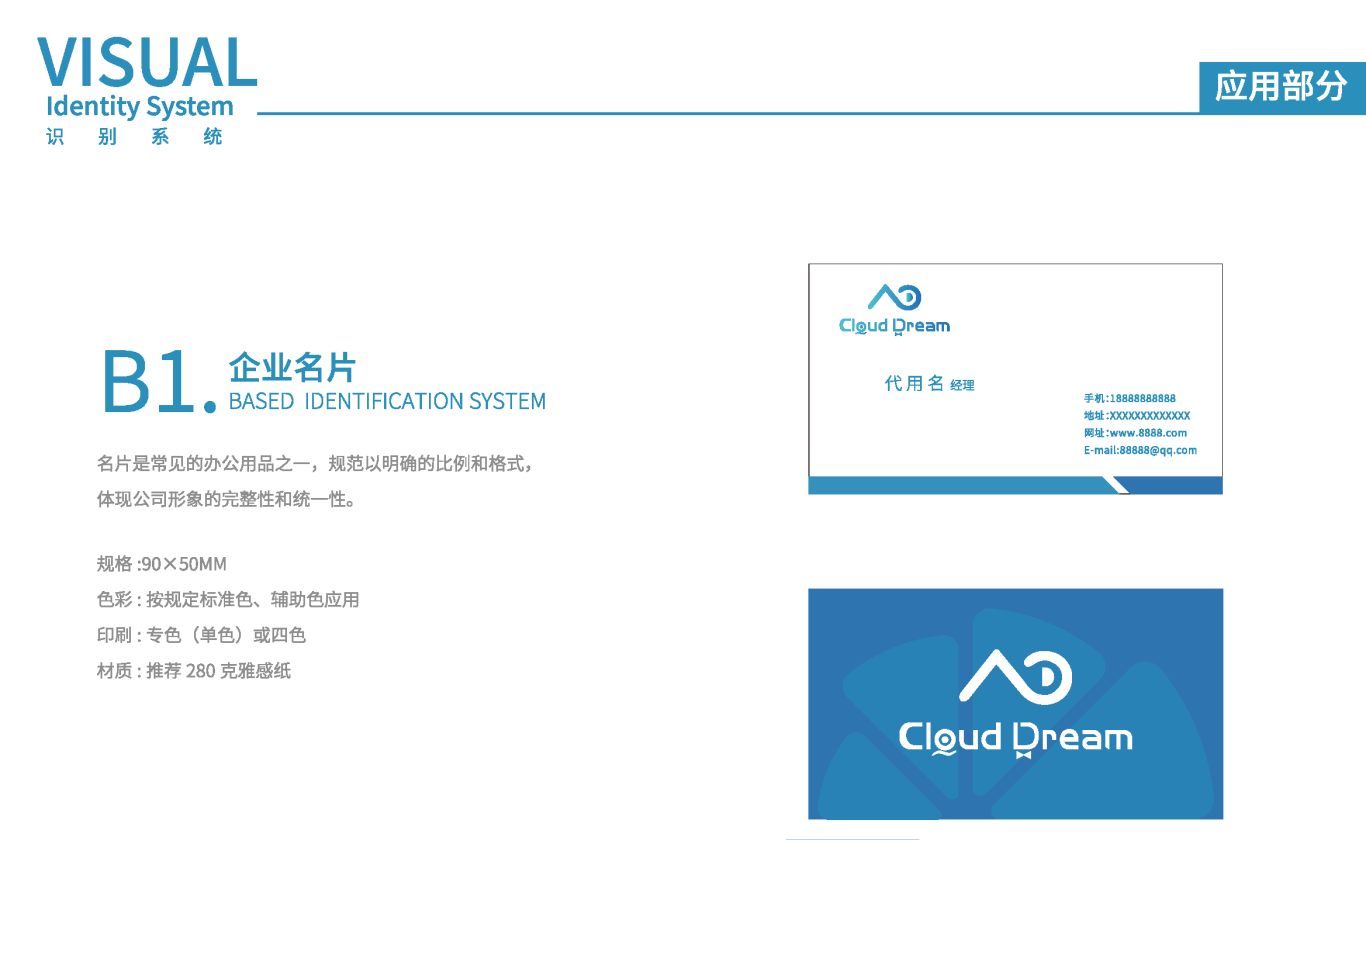 Cloud DreamVIS視覺識別系統手冊圖11